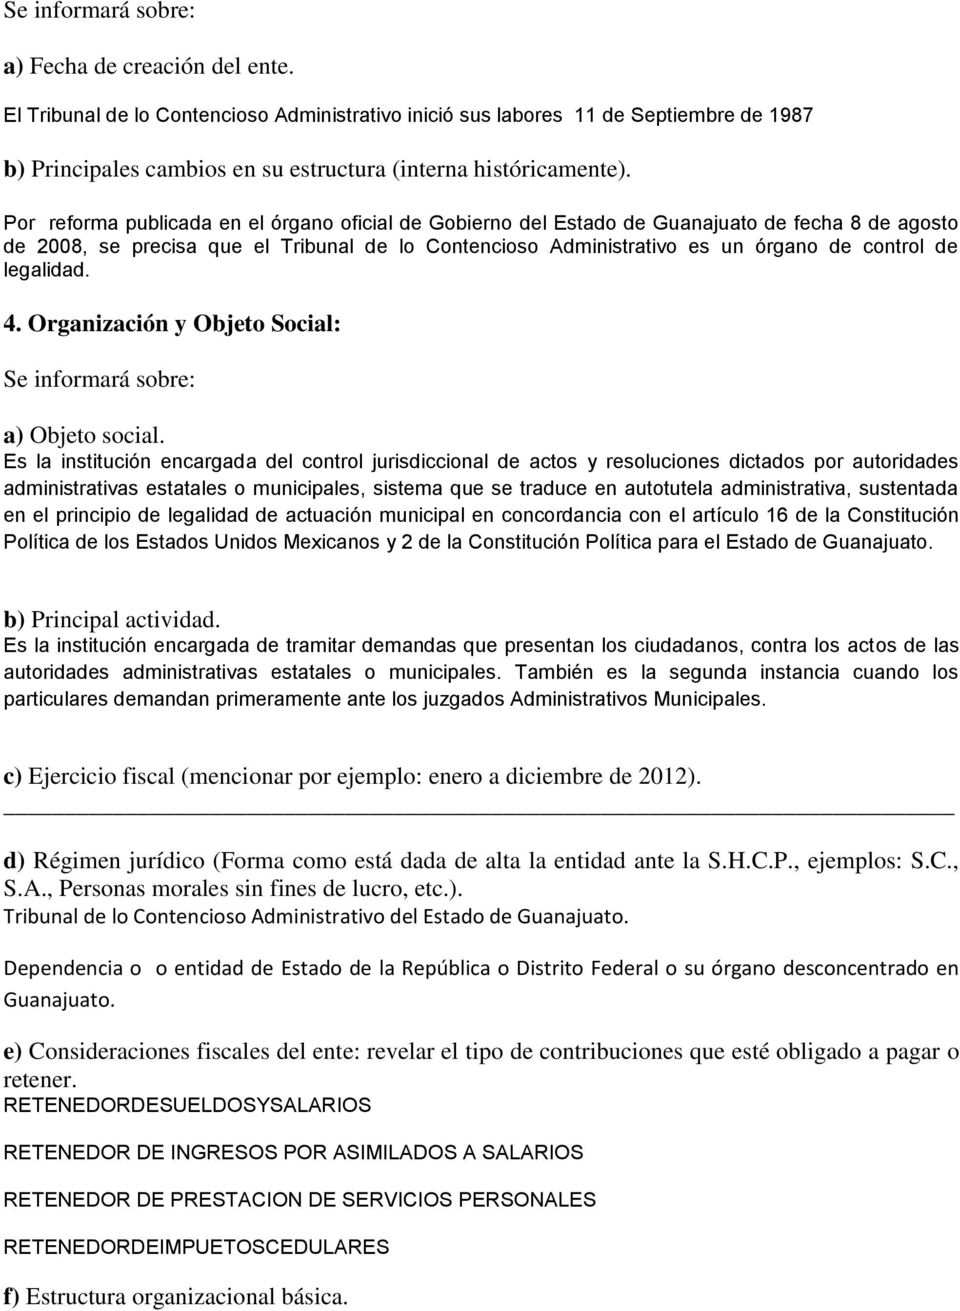 Por reforma publicada en el órgano oficial de Gobierno del Estado de Guanajuato de fecha 8 de agosto de 2008, se precisa que el Tribunal de lo Contencioso Administrativo es un órgano de control de